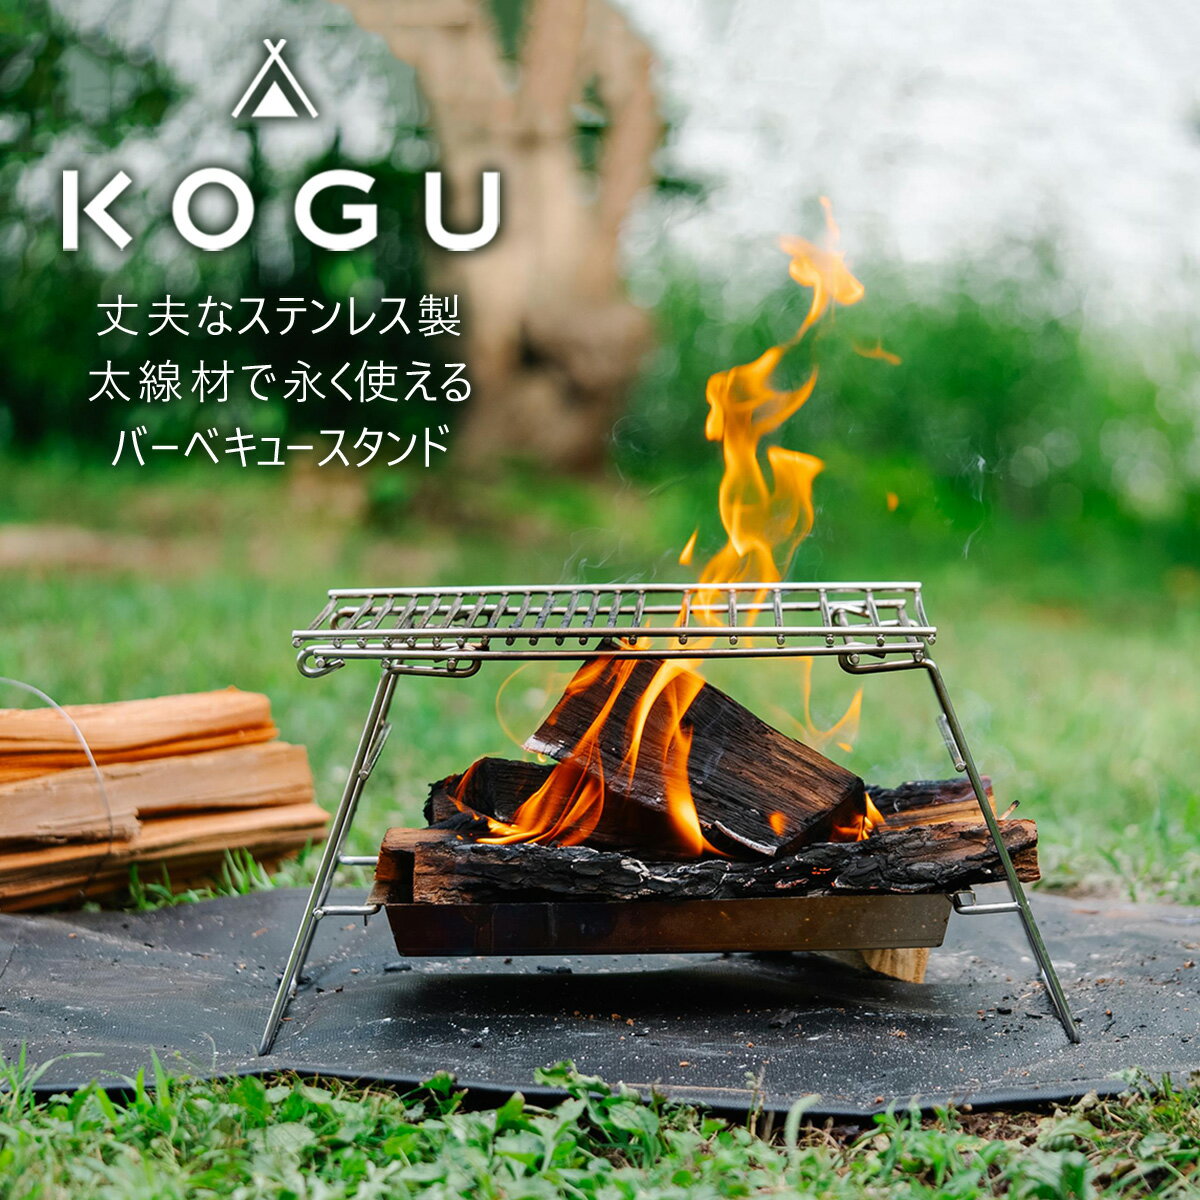 [KOGU] バーベキュースタンド ステンレス製 組立簡単 bbq 焚き火台 焚火台 アウトドア用品 キャンプ用品 燕三条製 